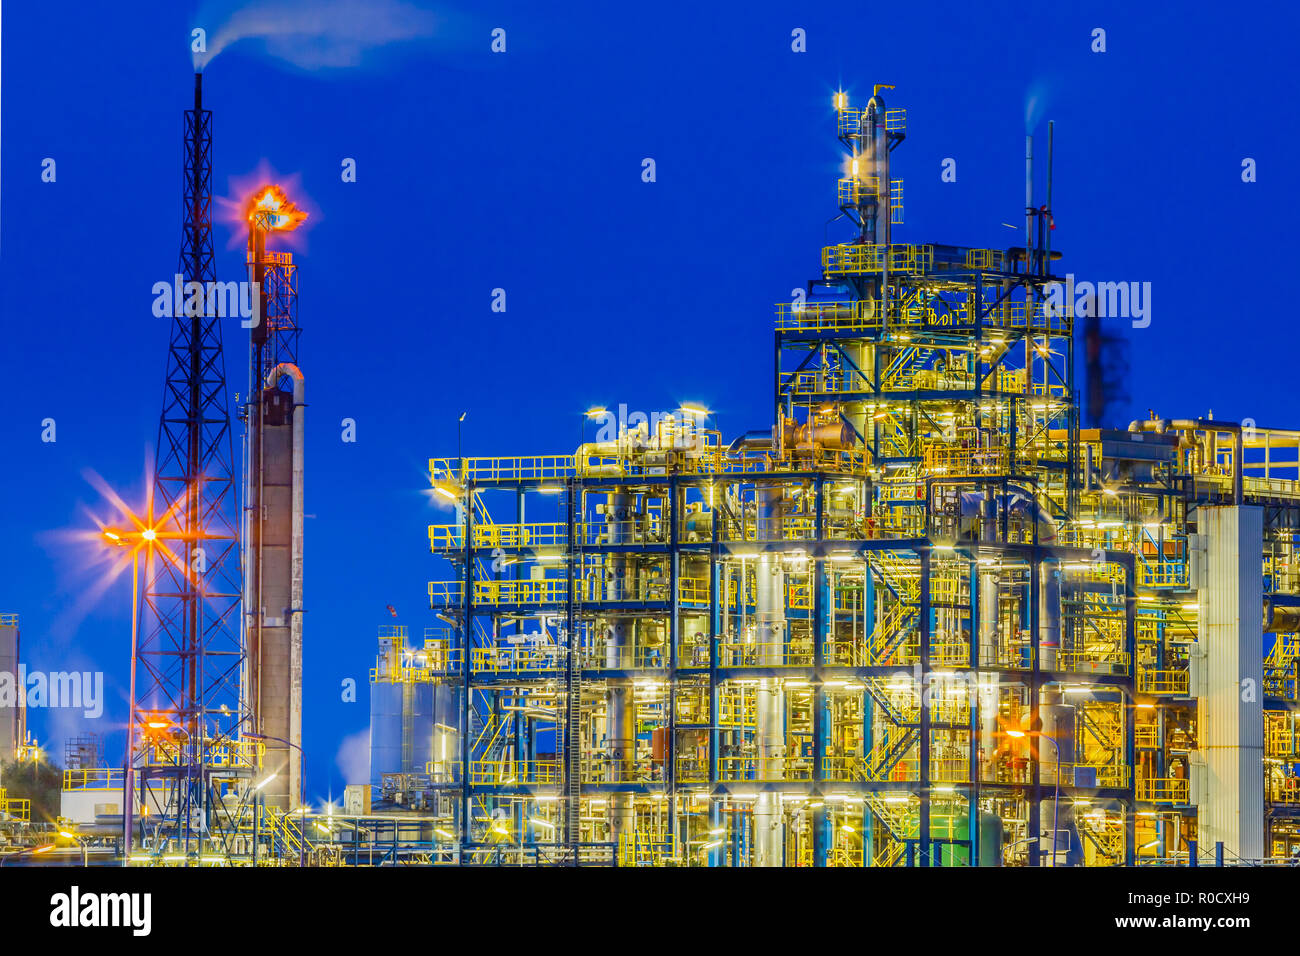 Scena notturna di una sostanza chimica pesante impianto industriale quadro con un labirinto di tubi durante il crepuscolo Foto Stock